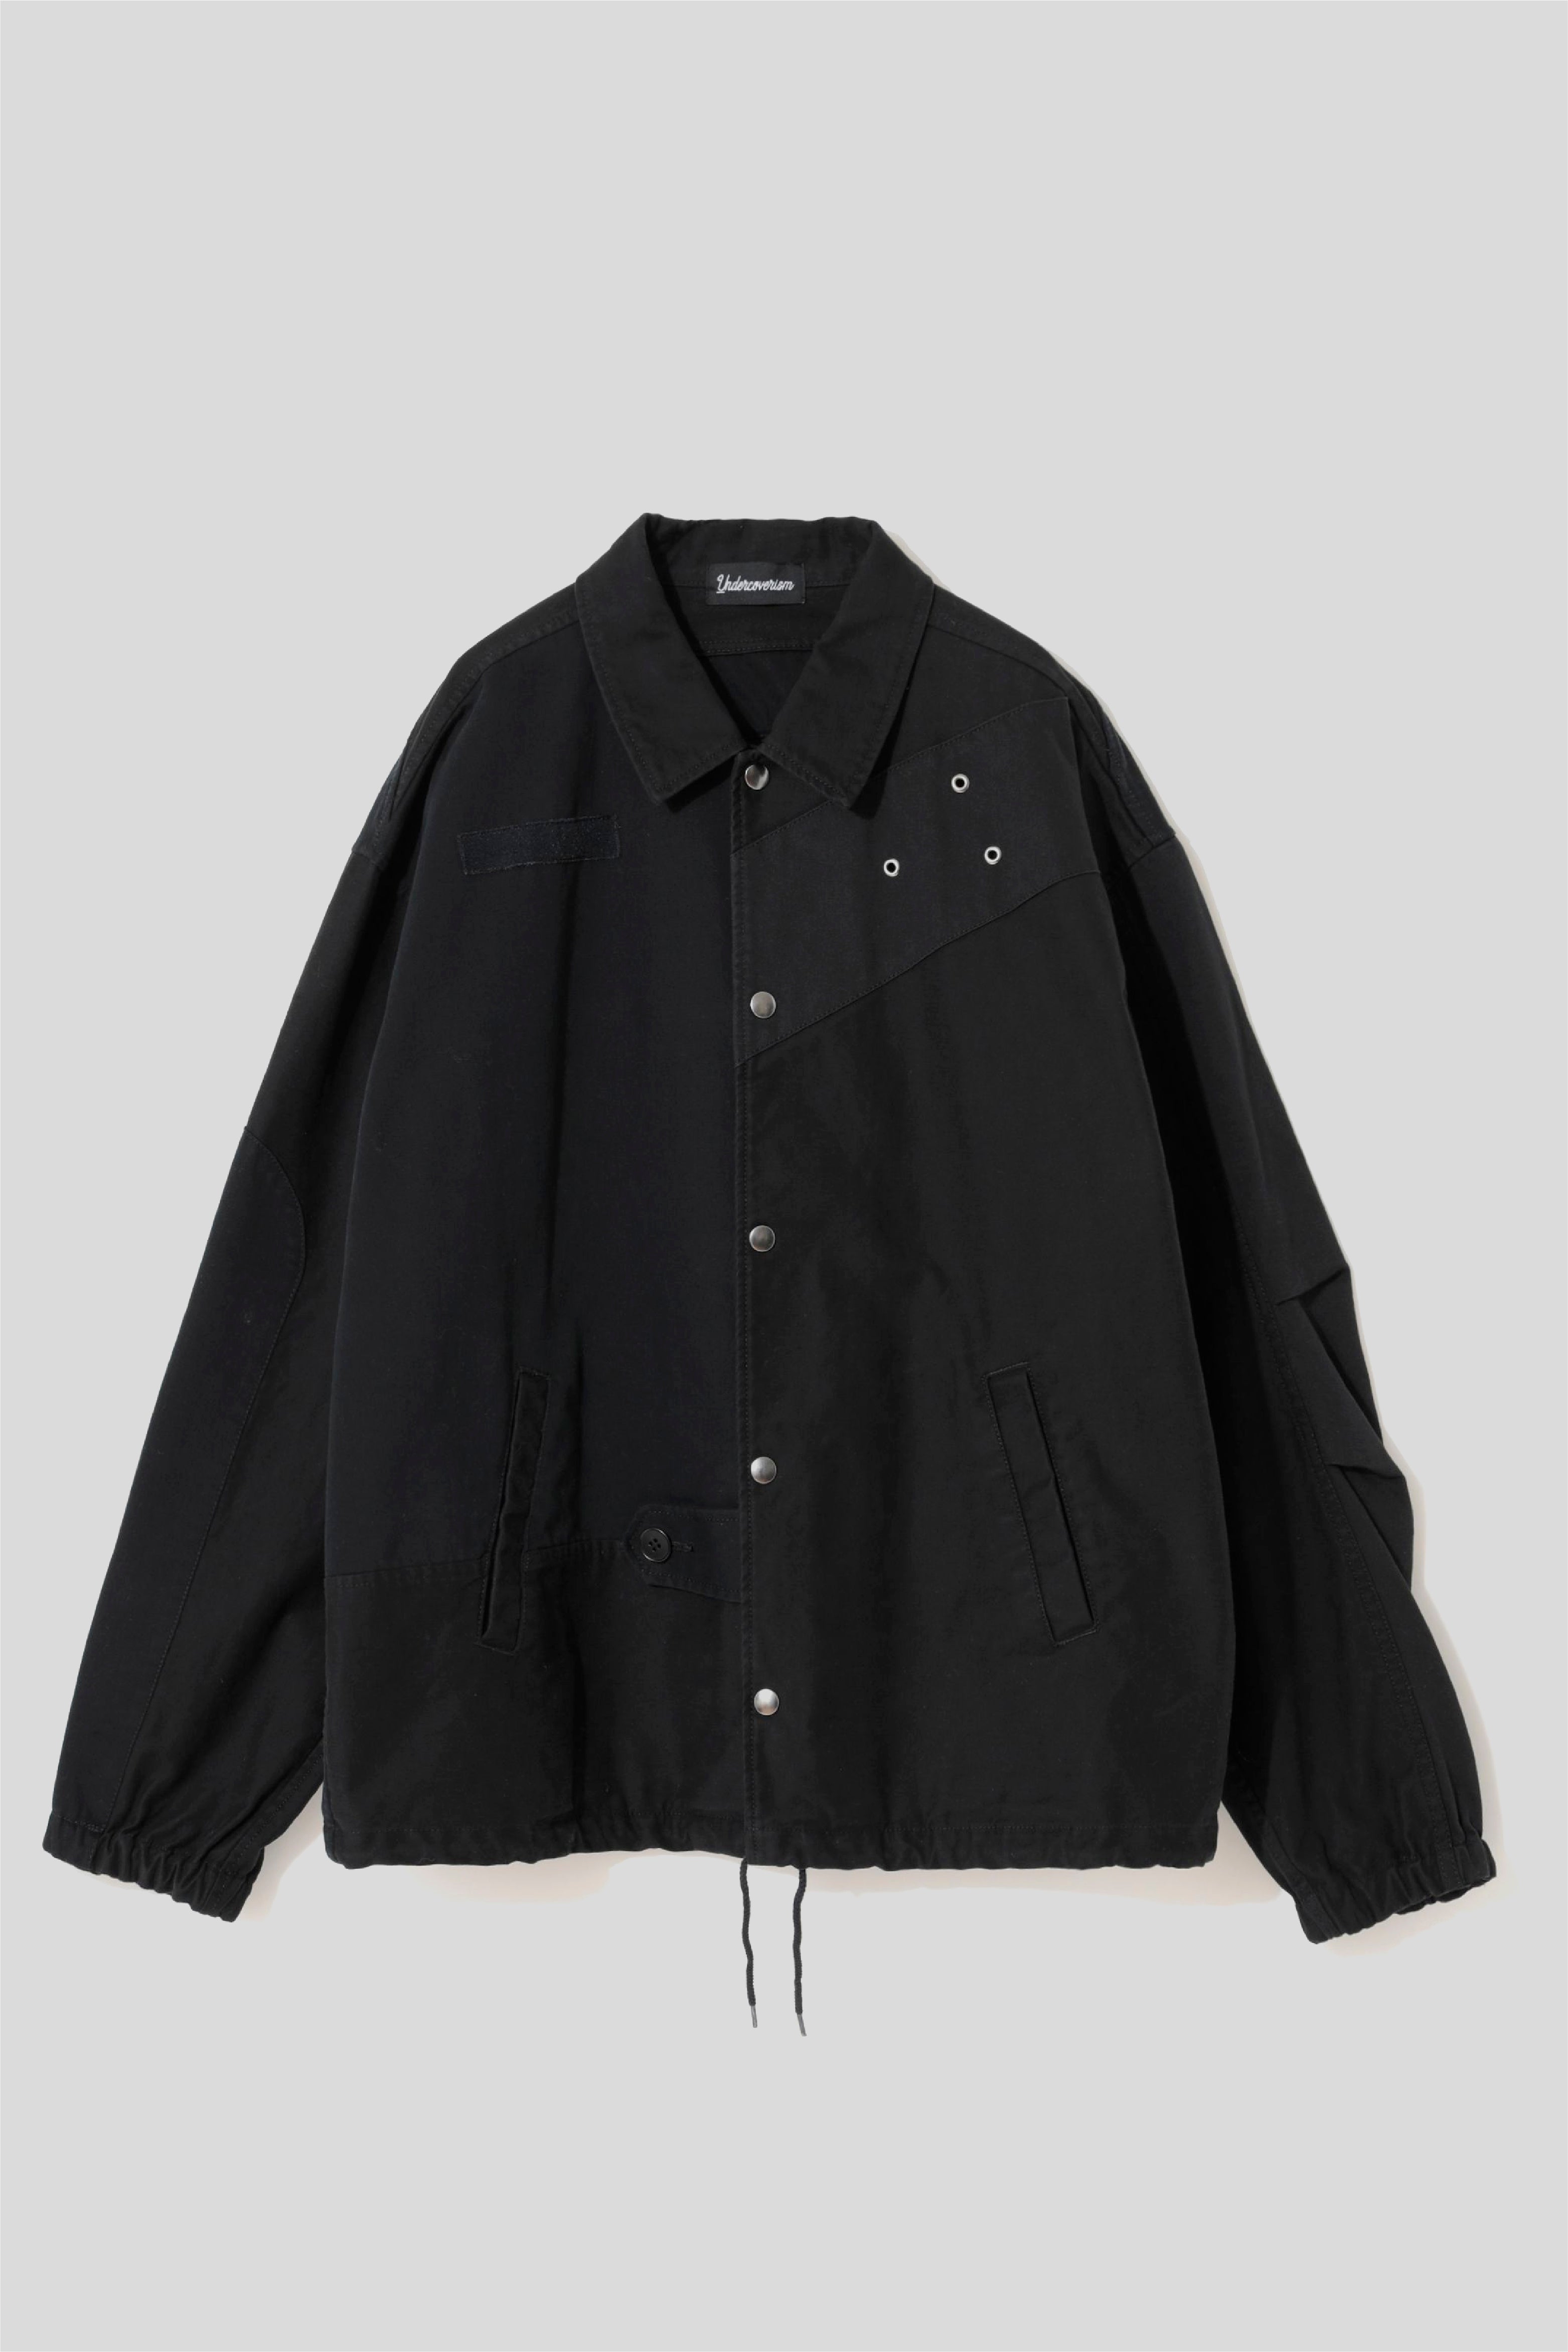 Selectshop FRAME - UNDERCOVERISM Jacket Outerwear Dubai